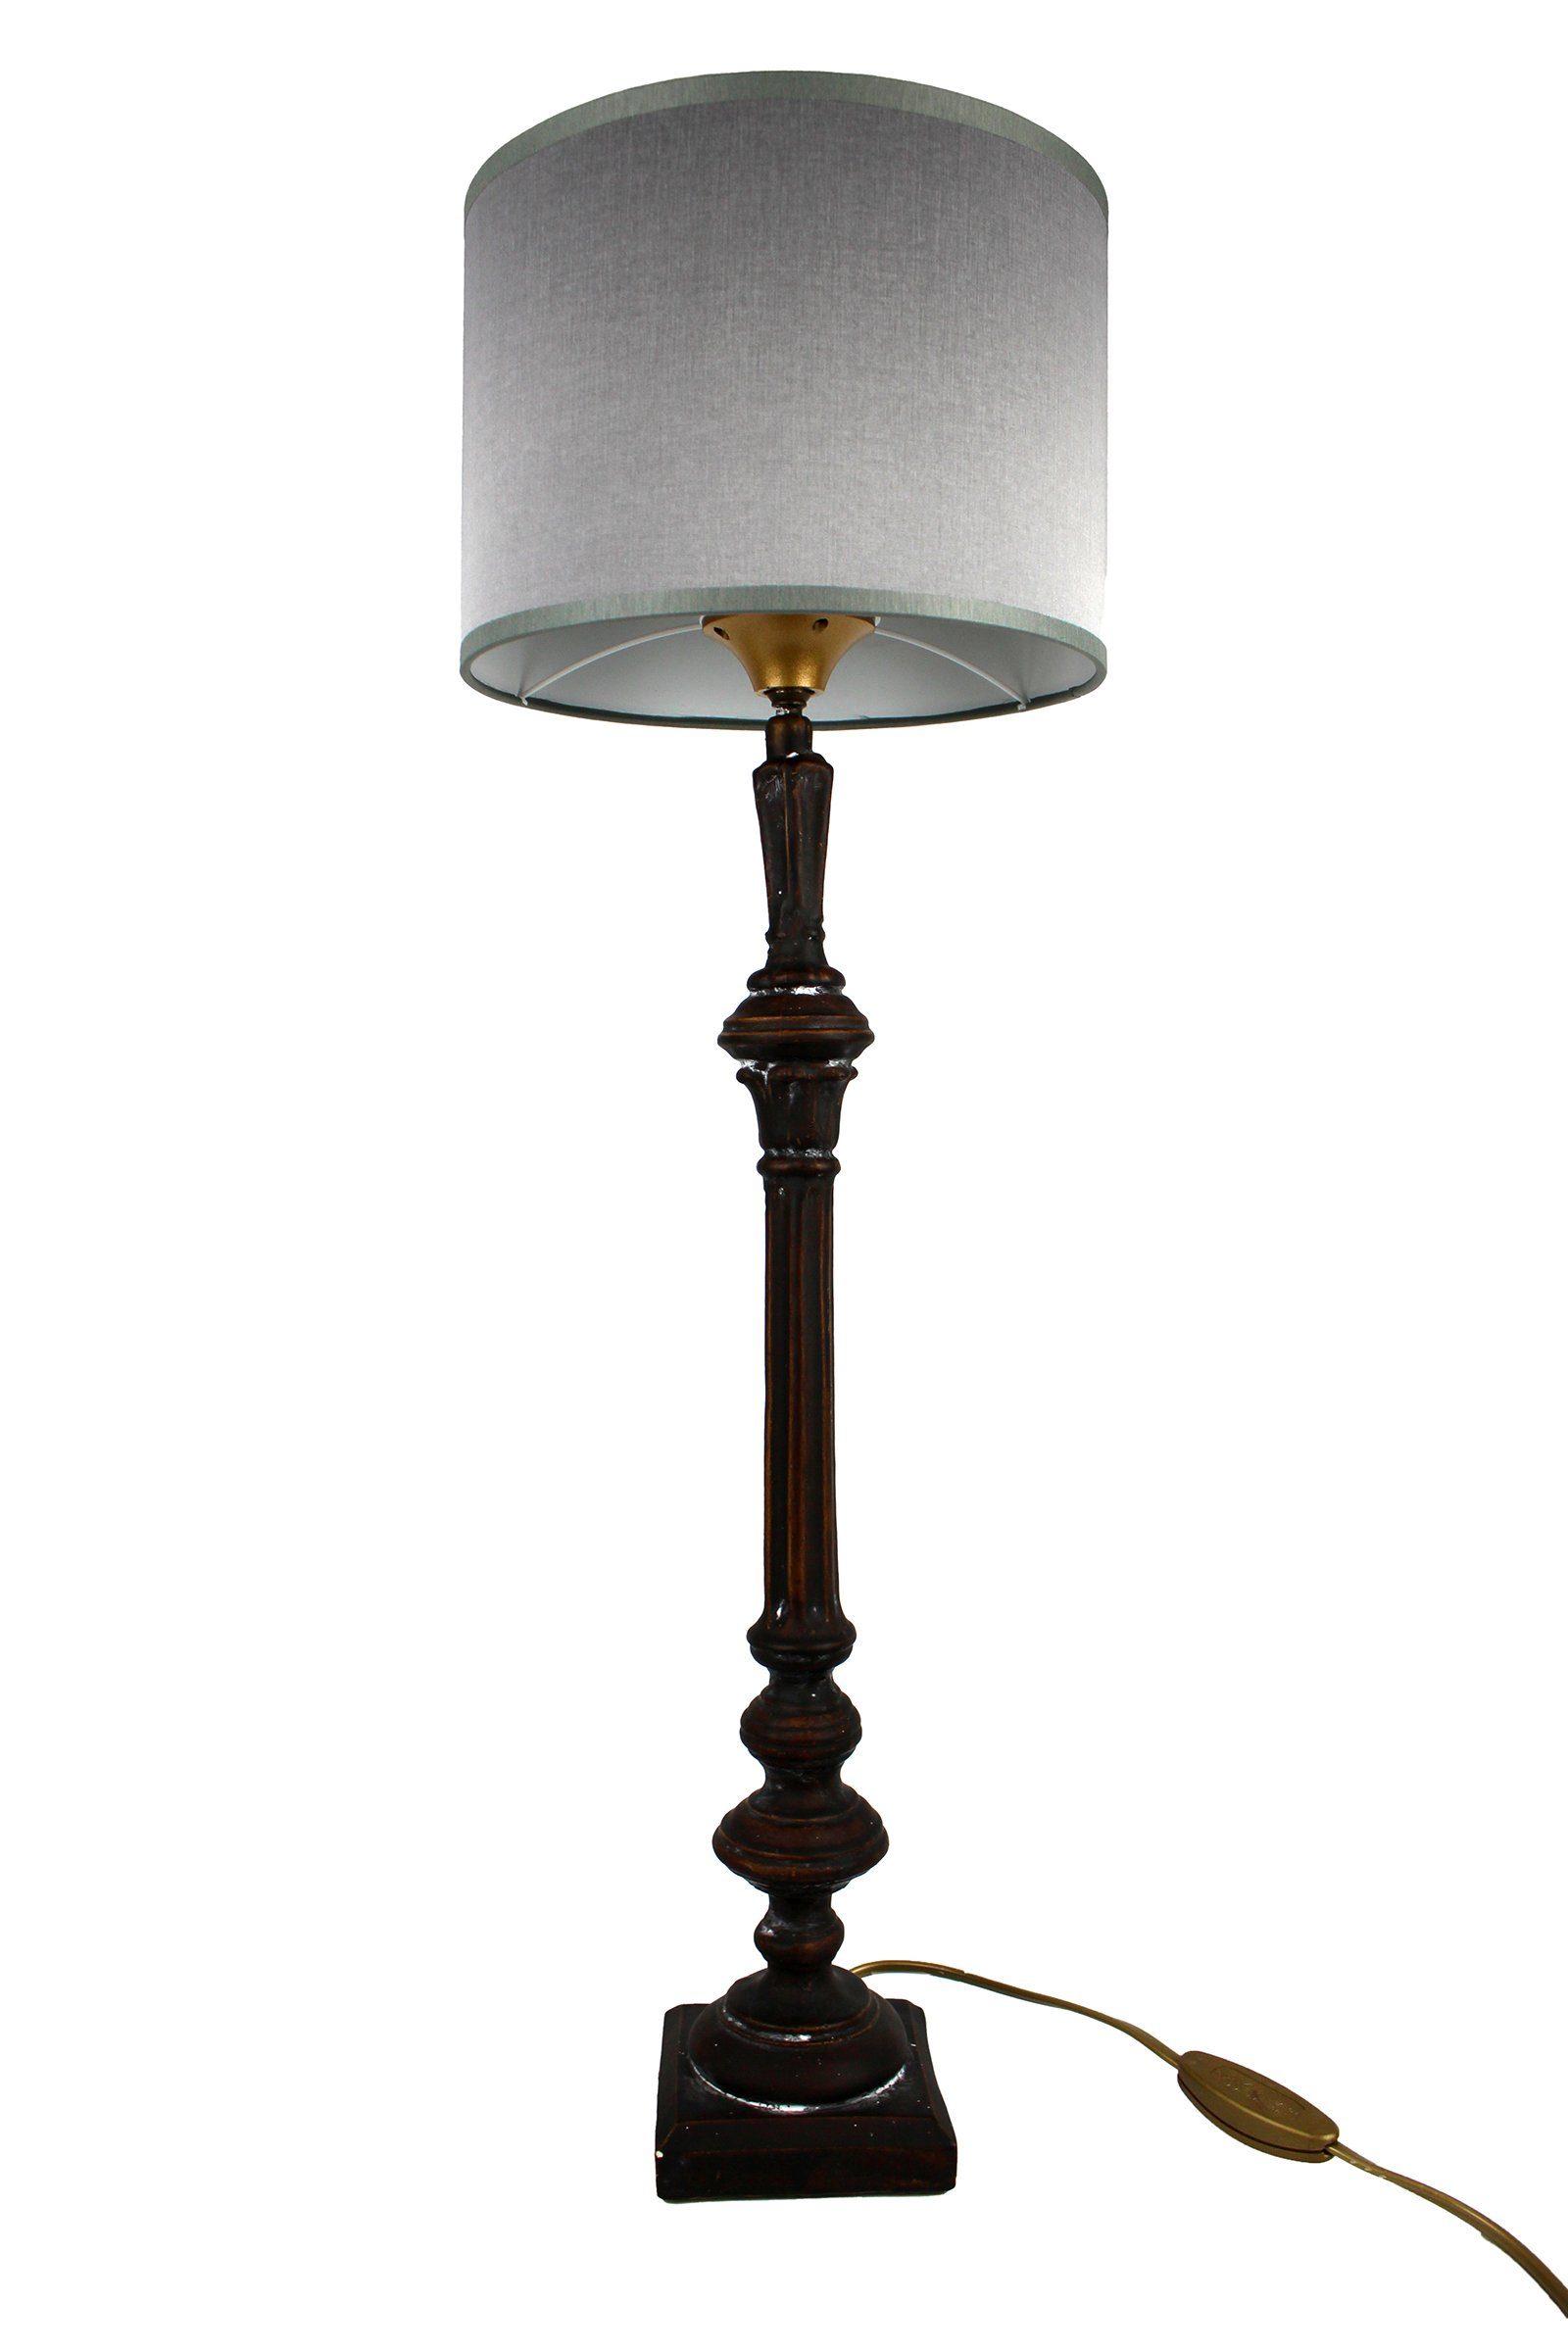 Signature Home Collection Tischleuchte Tischlampe schmal Holz gedrechselt  lackiert mit Lampenschirm, ohne Leuchtmittel, warmweiß, handgefertigt in  Italien